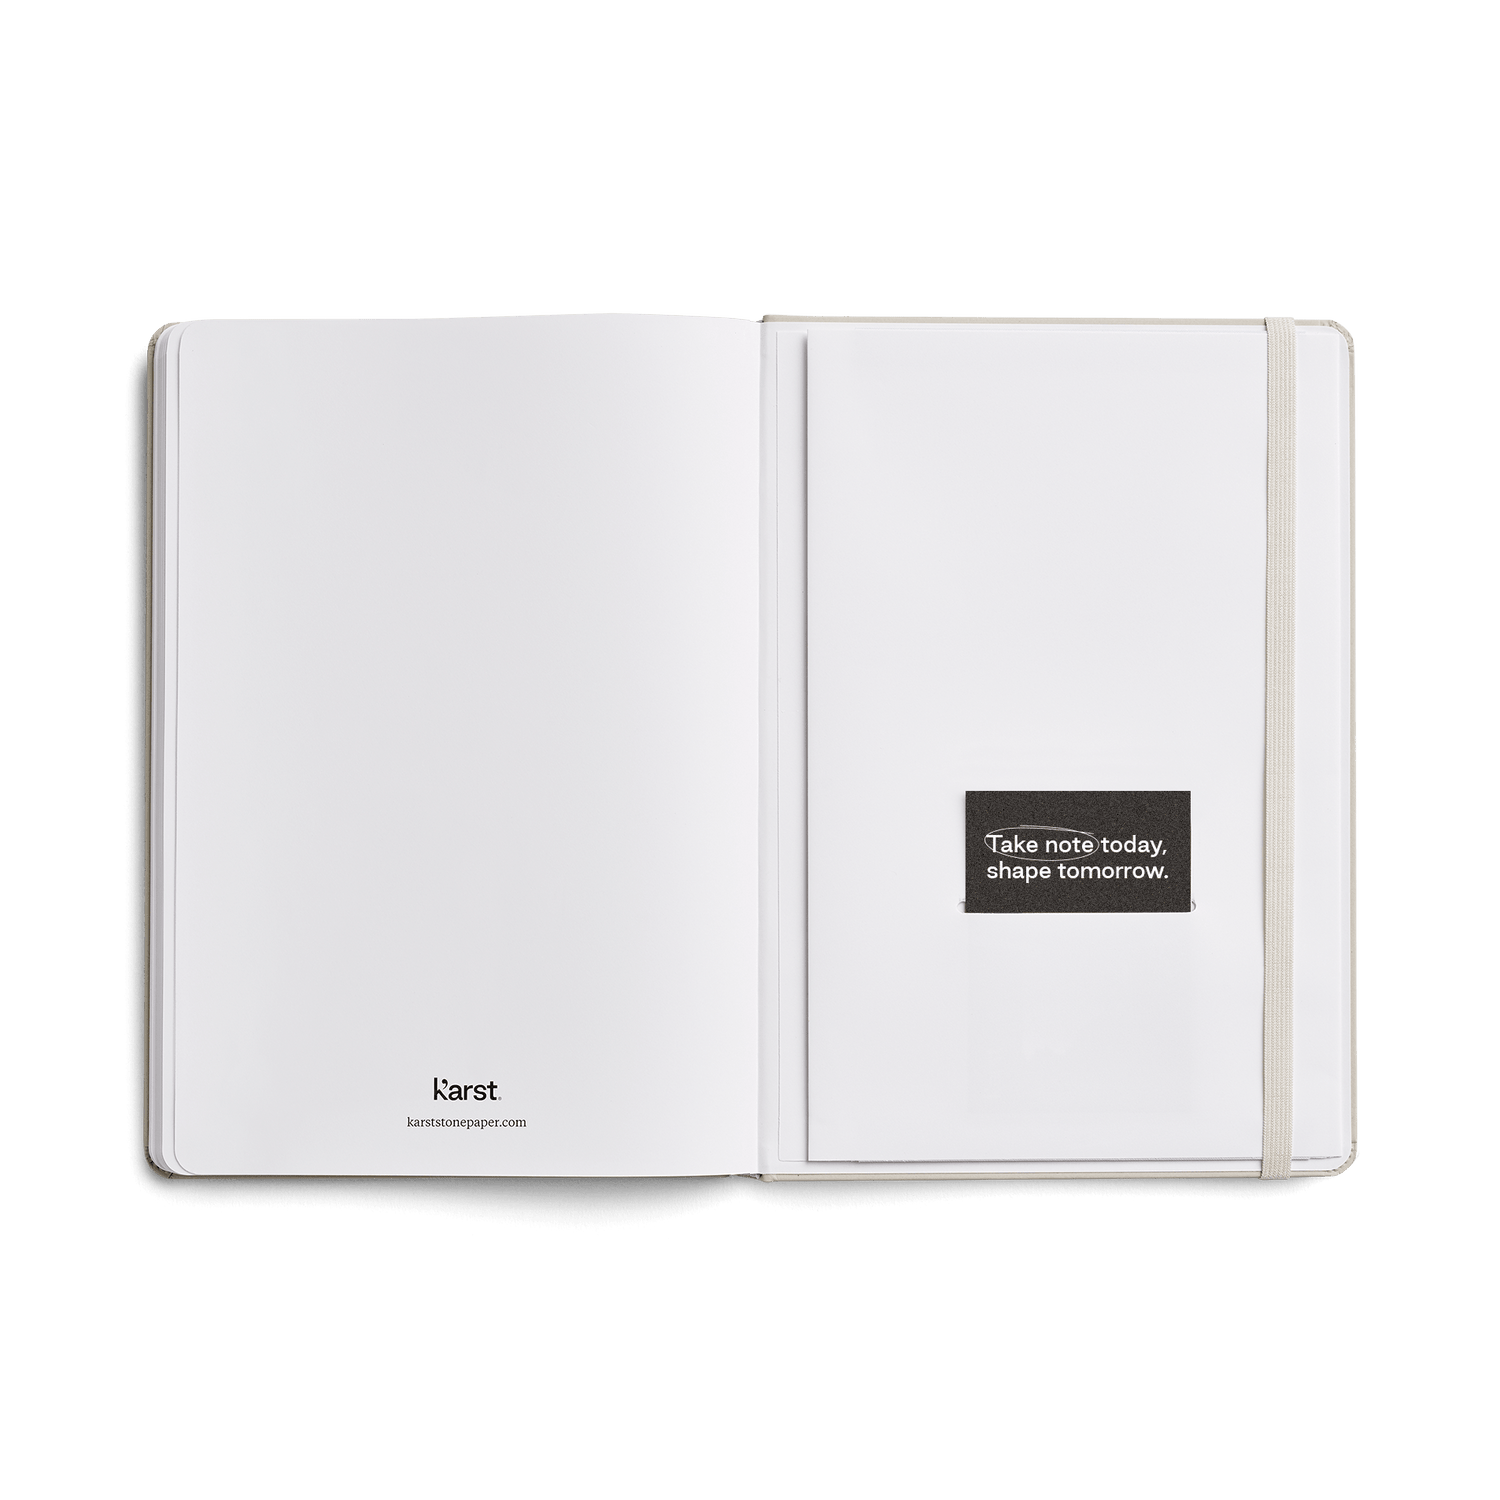 Custom Karst Stone Paper Hardcover Notebook